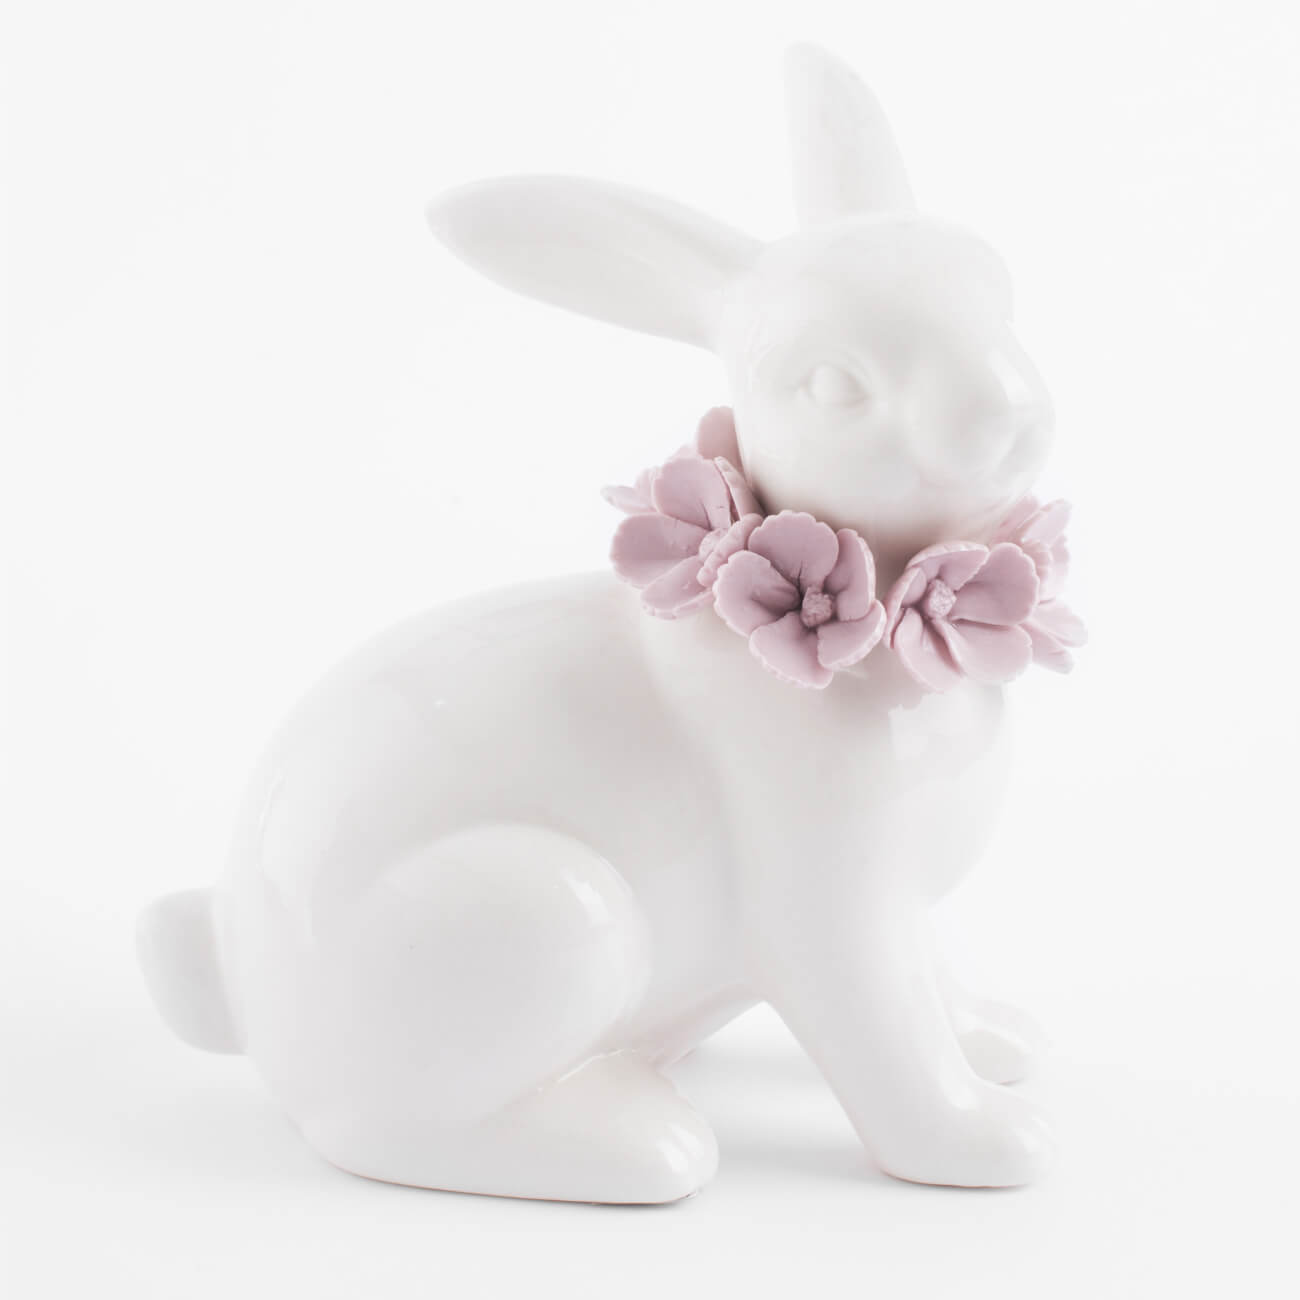 Статуэтка, 15 см, фарфор Porcelain, белая, Кролик в цветах, Pure Easter изображение № 1